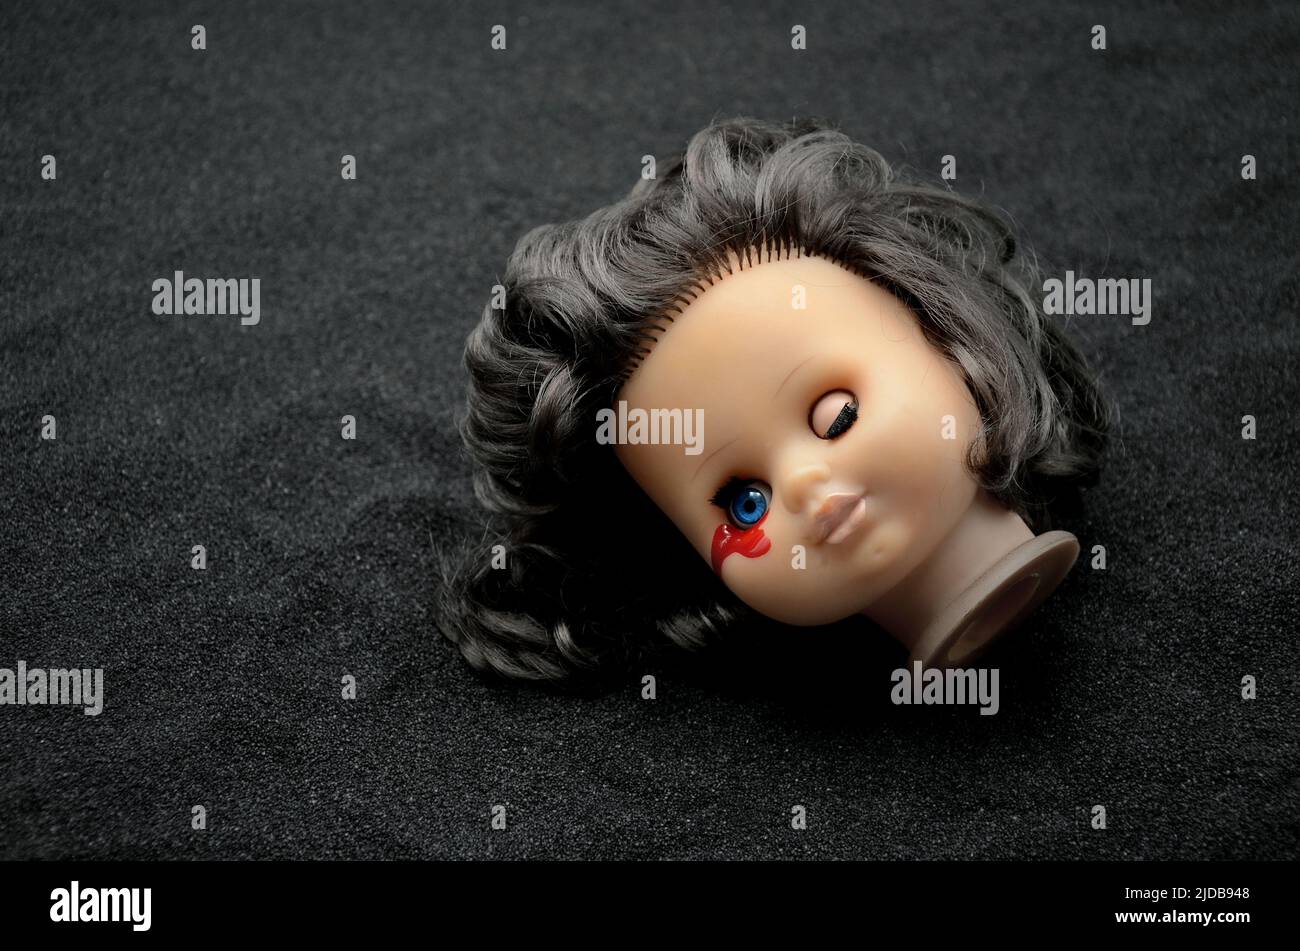 creepy doll head Stock Photo